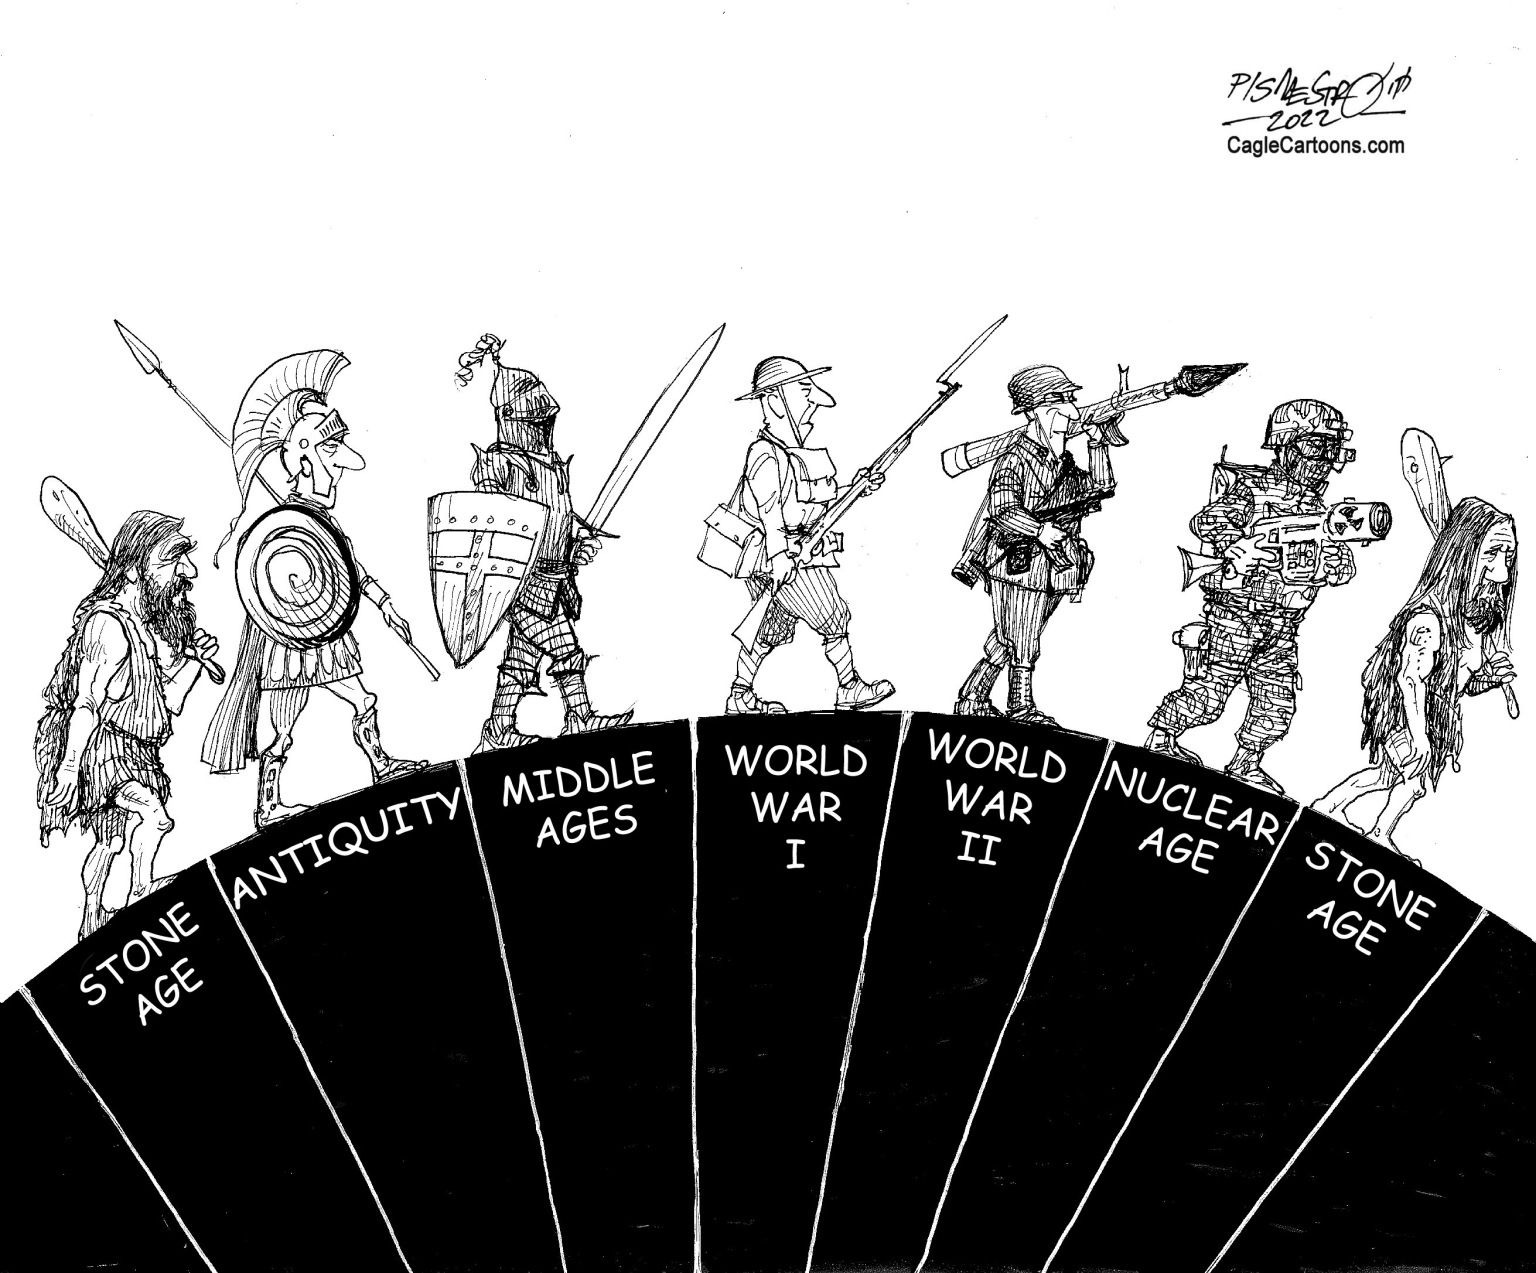 Military evolution - News JustIN Political Cartoon - newsjustin.press